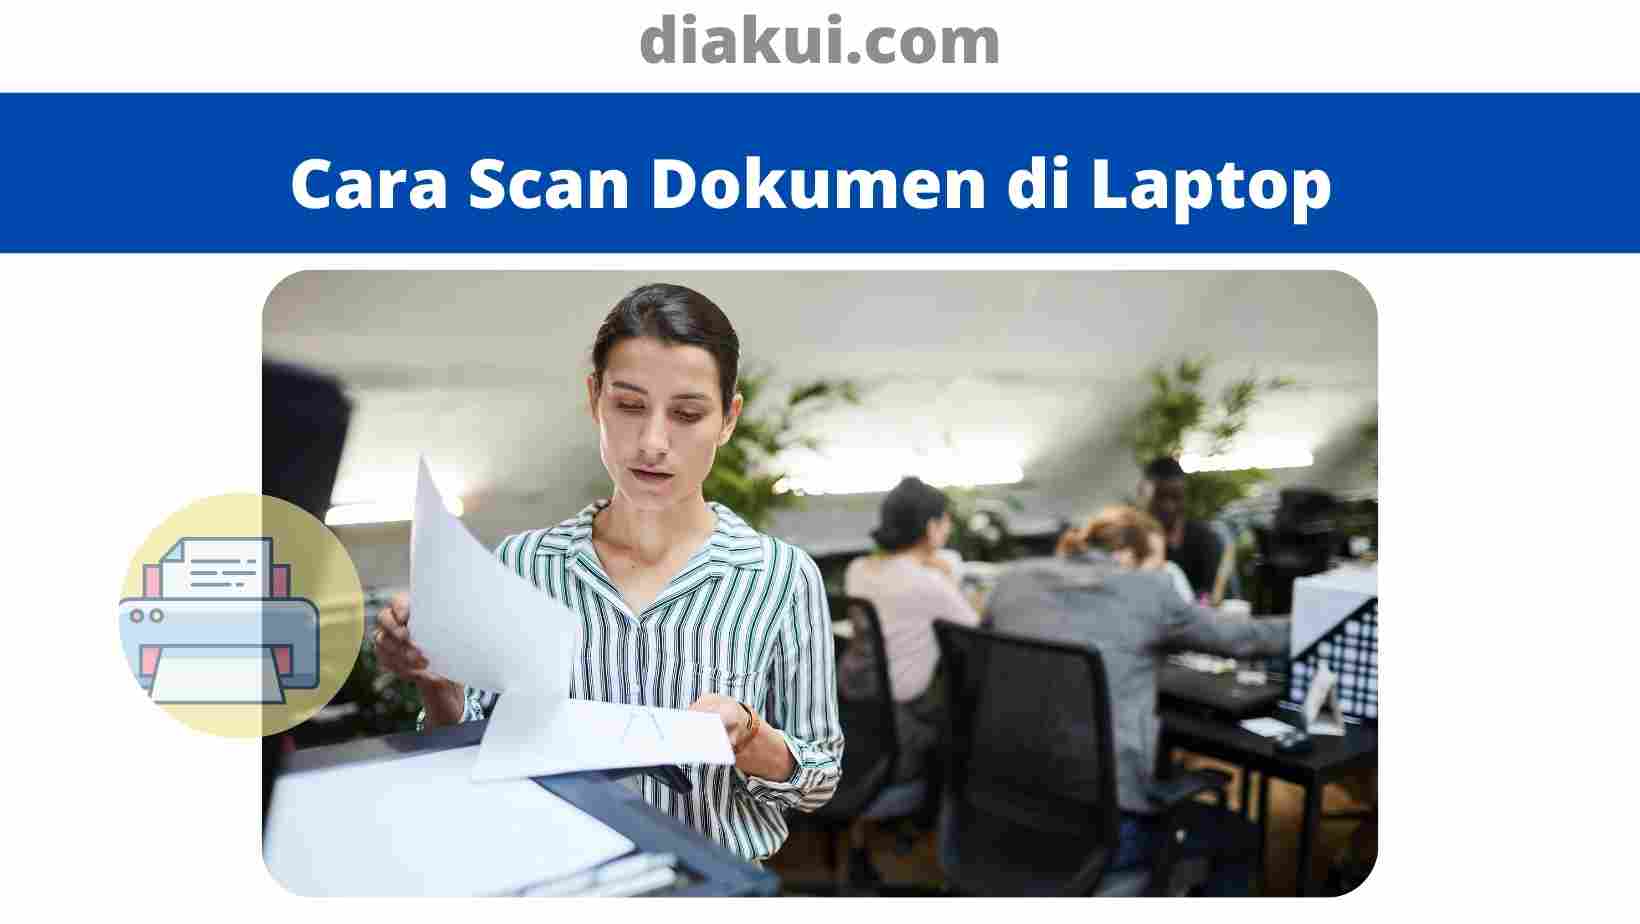 Cara Scan Dokumen di Laptop